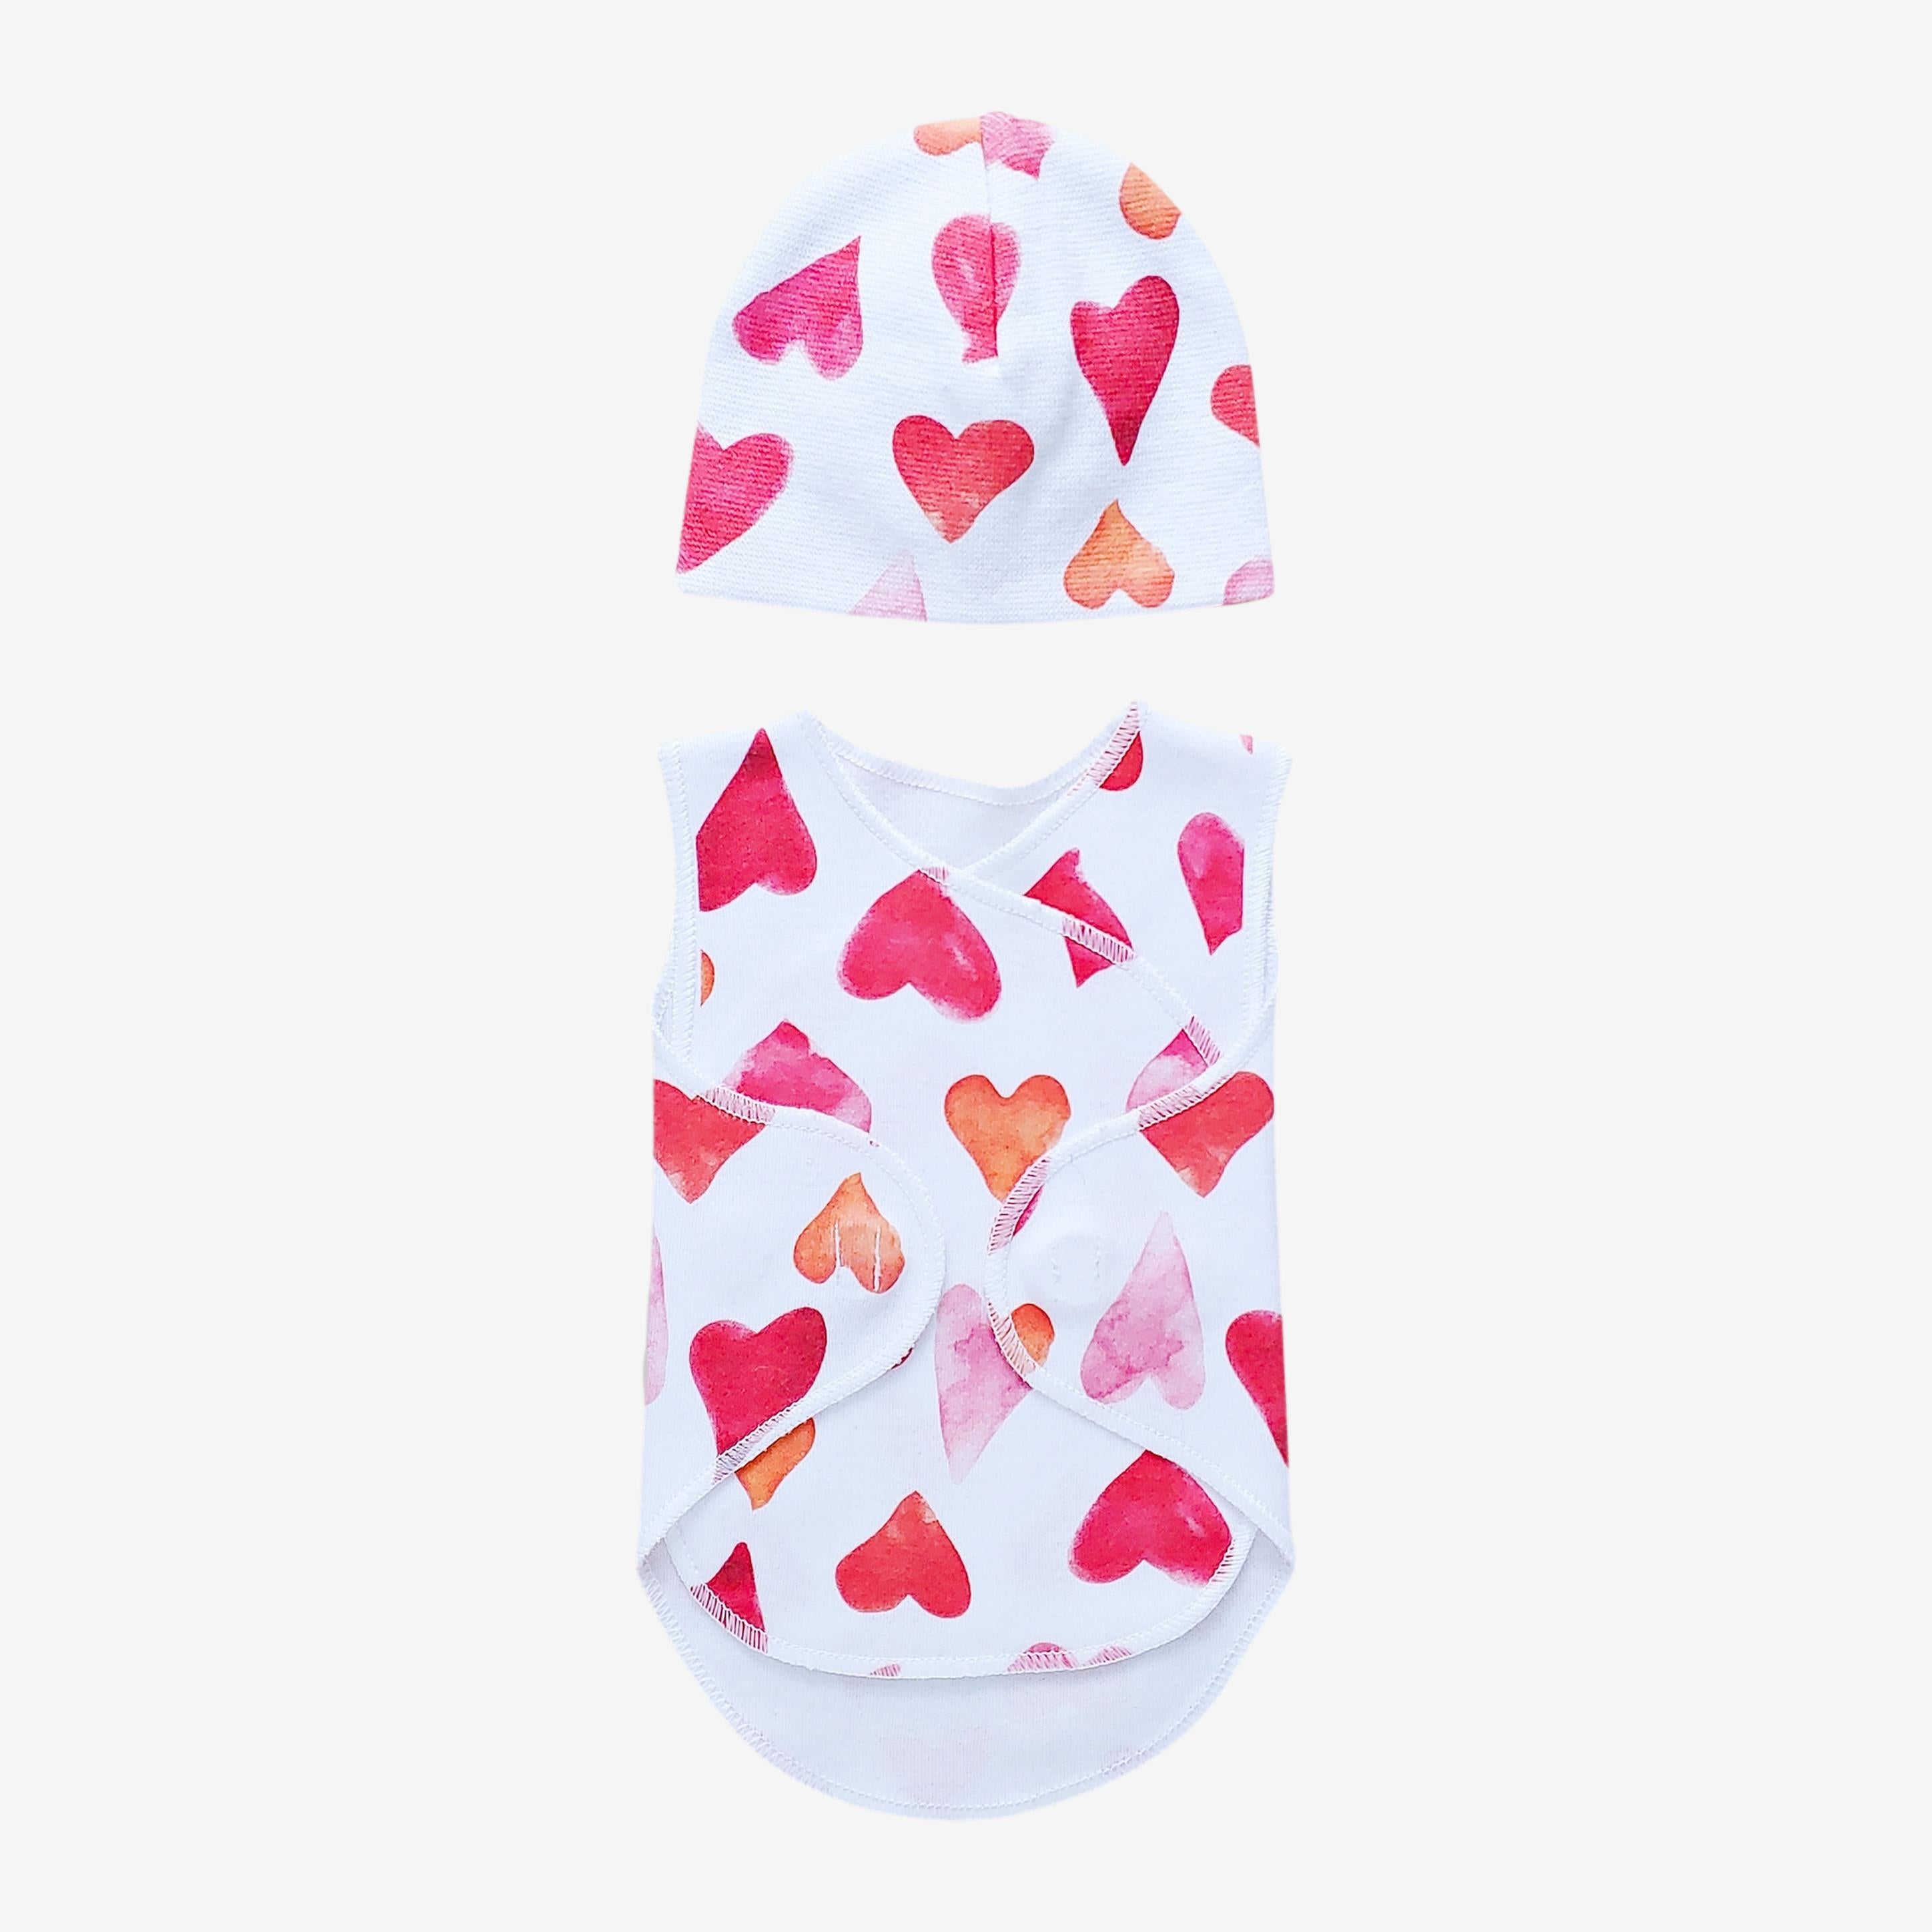 Preemie Wrap Set // Watercolor Hearts